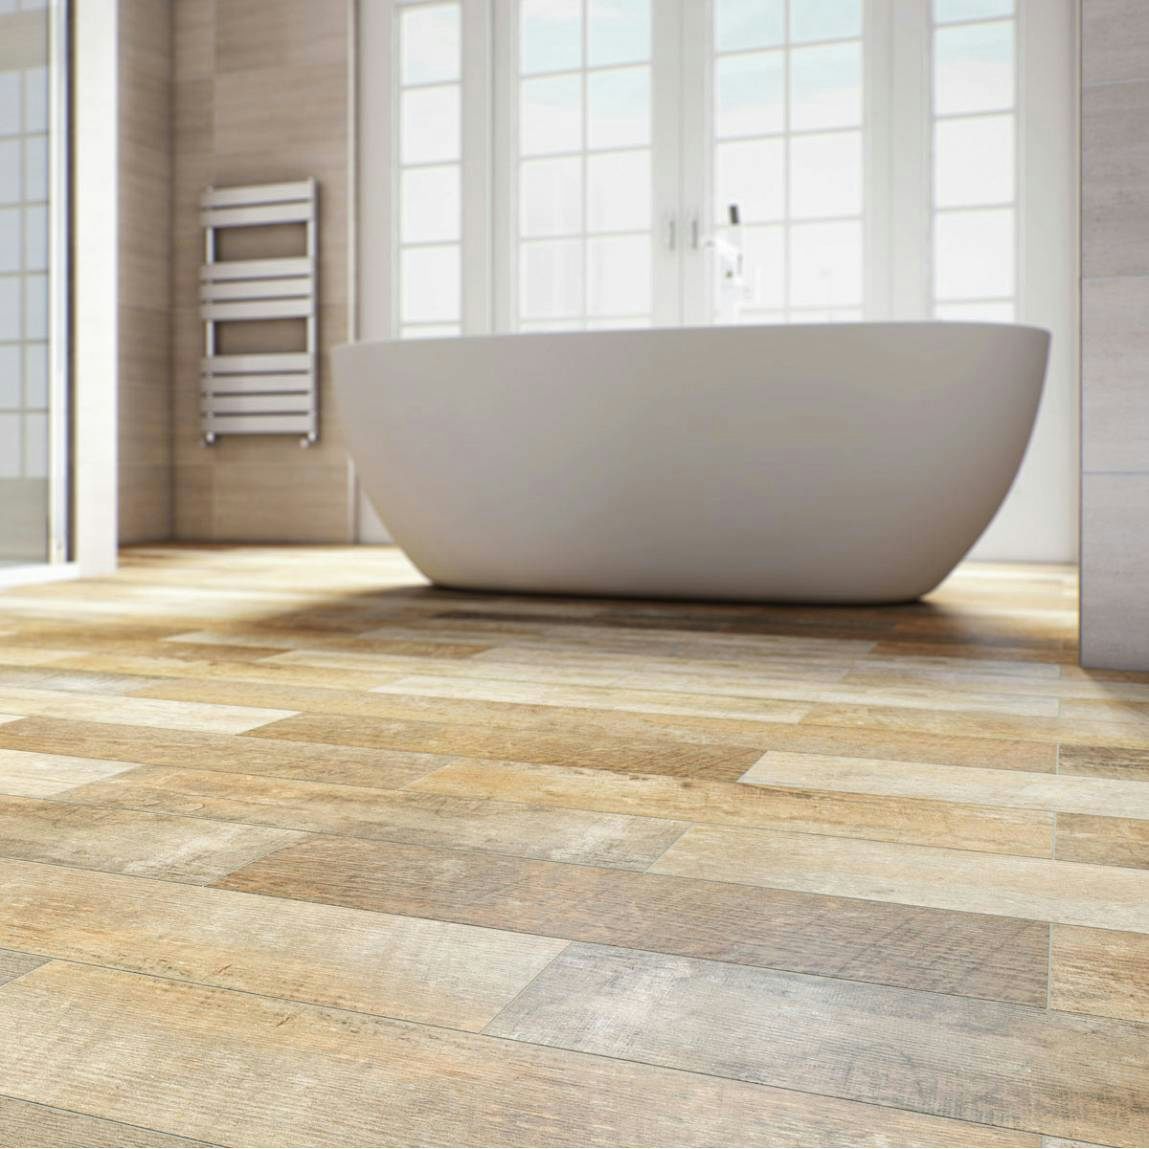 Wood effect floor tiles